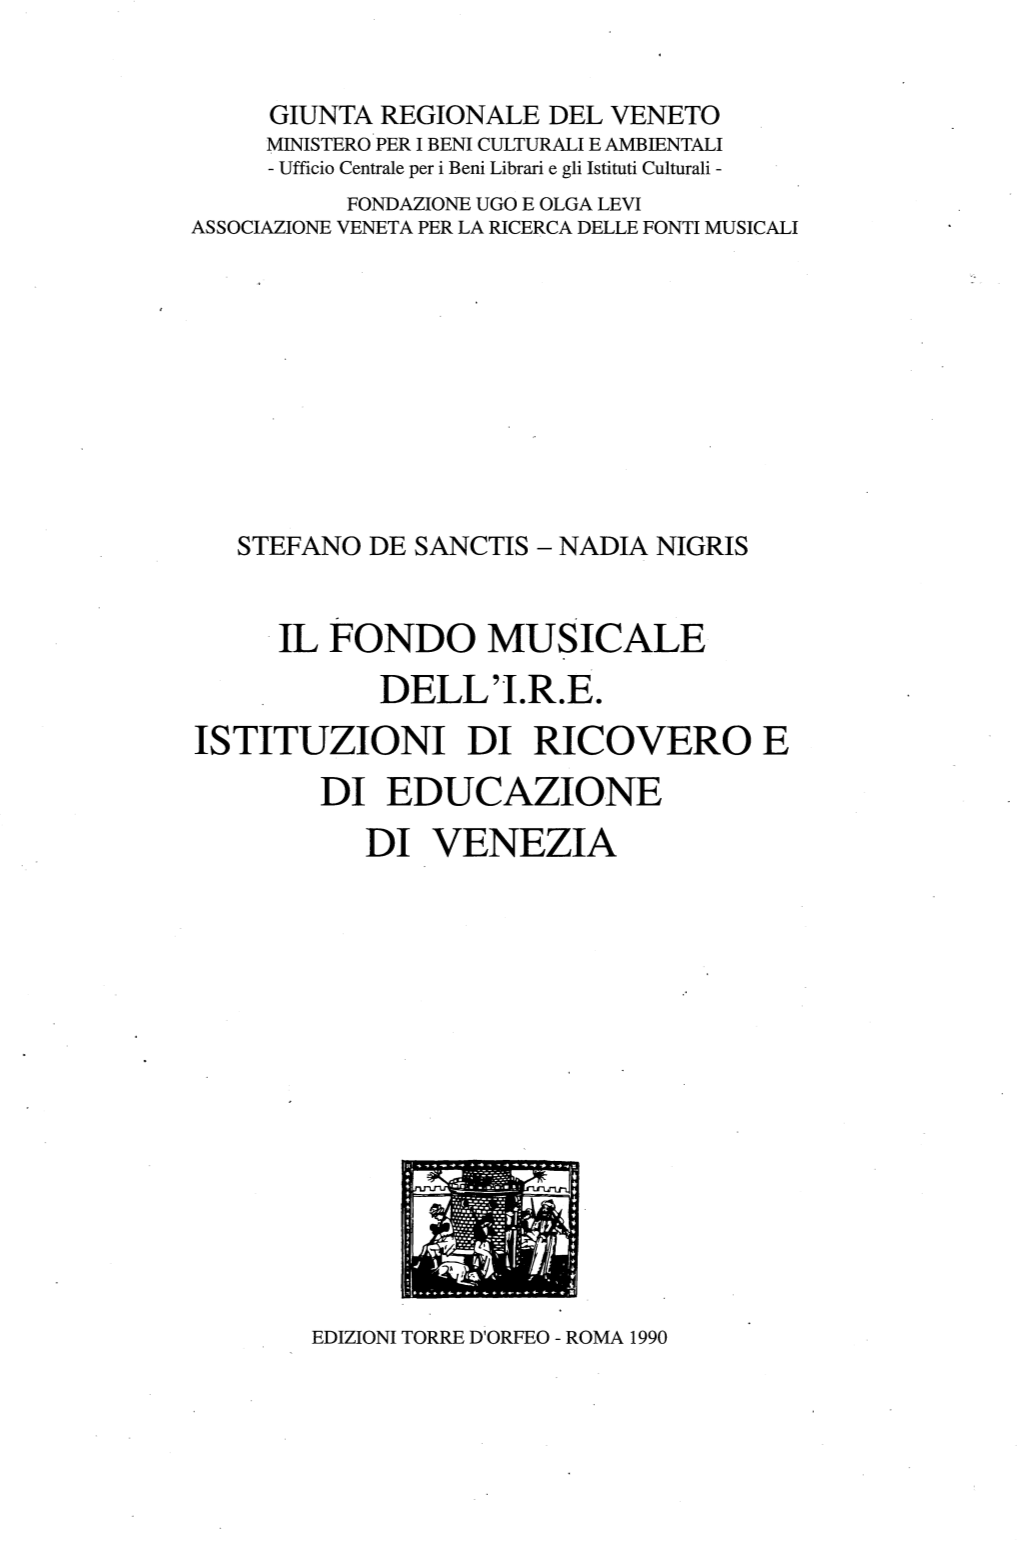 Il Fondo Musicale Dell'i.R.E. Istituzioni Di Ricovero E Di Educazione Di Venezia